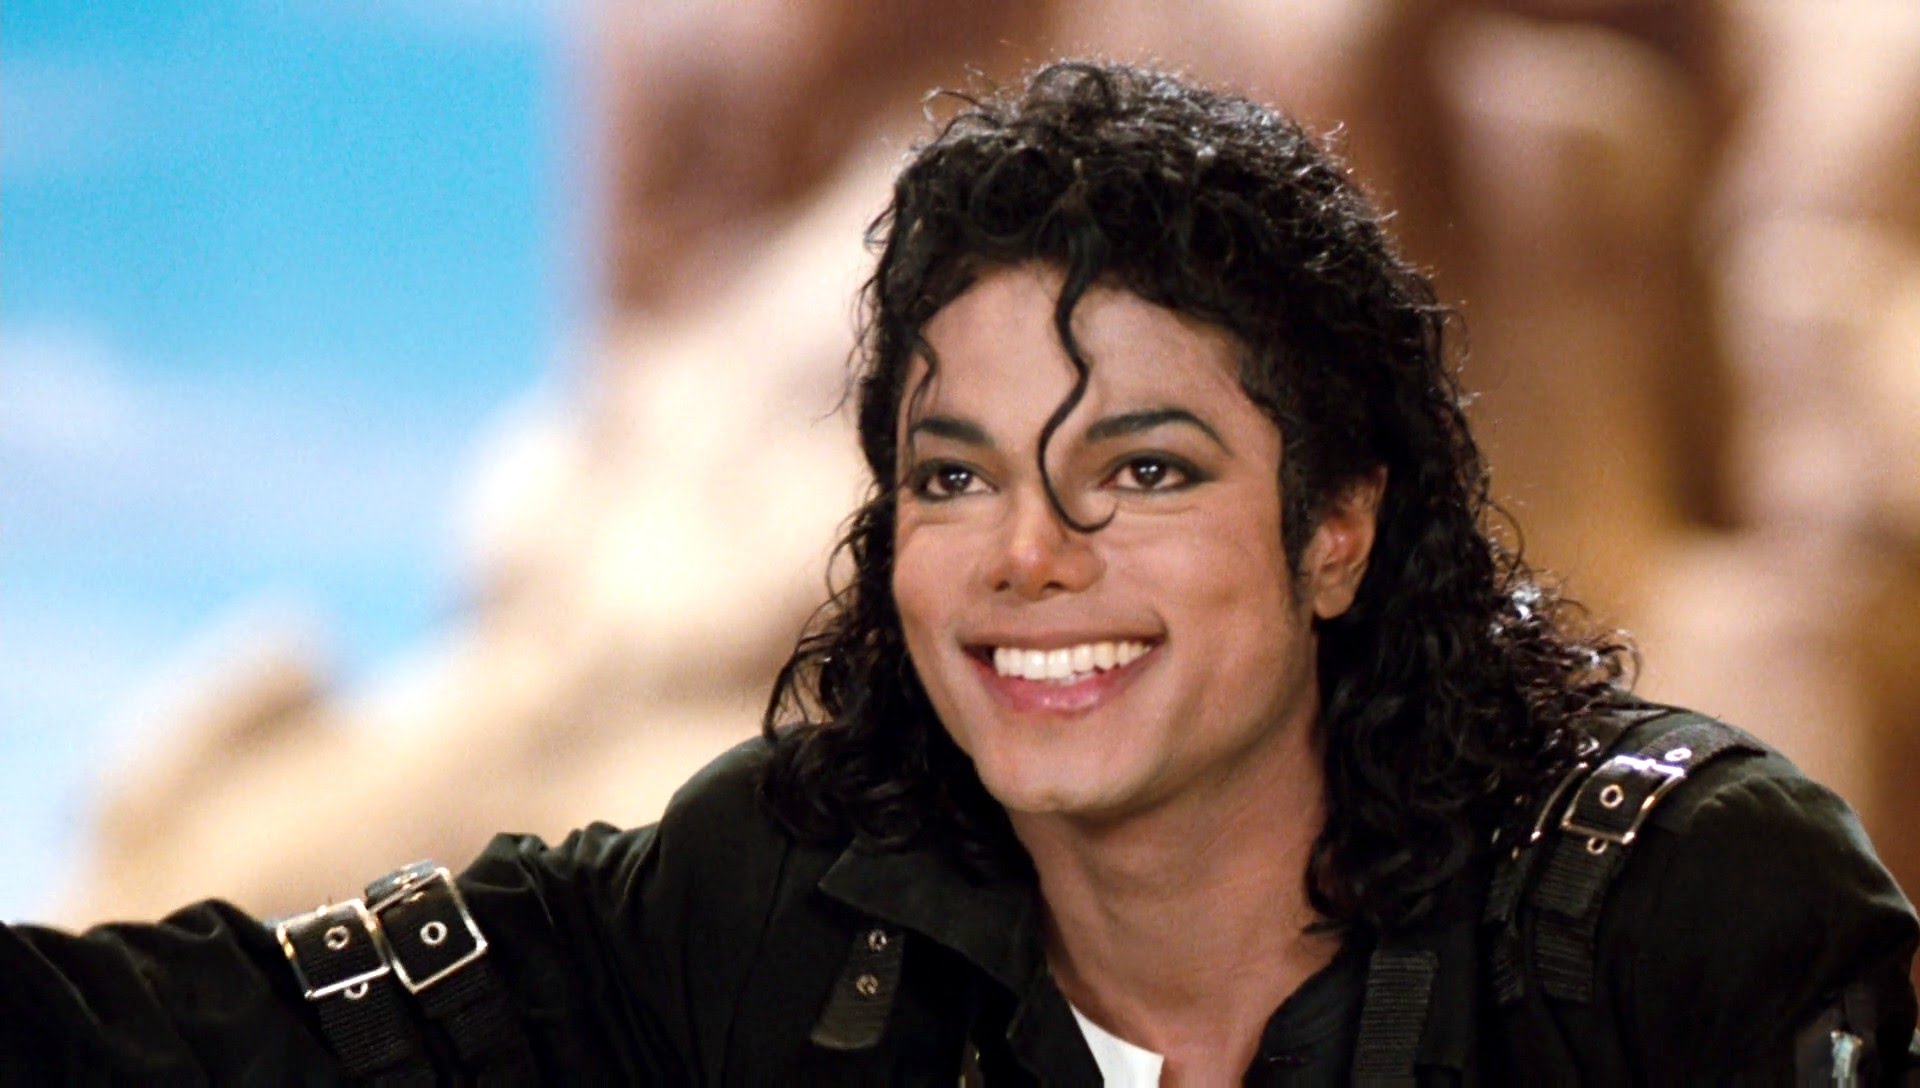  Biografie von Michael Jackson